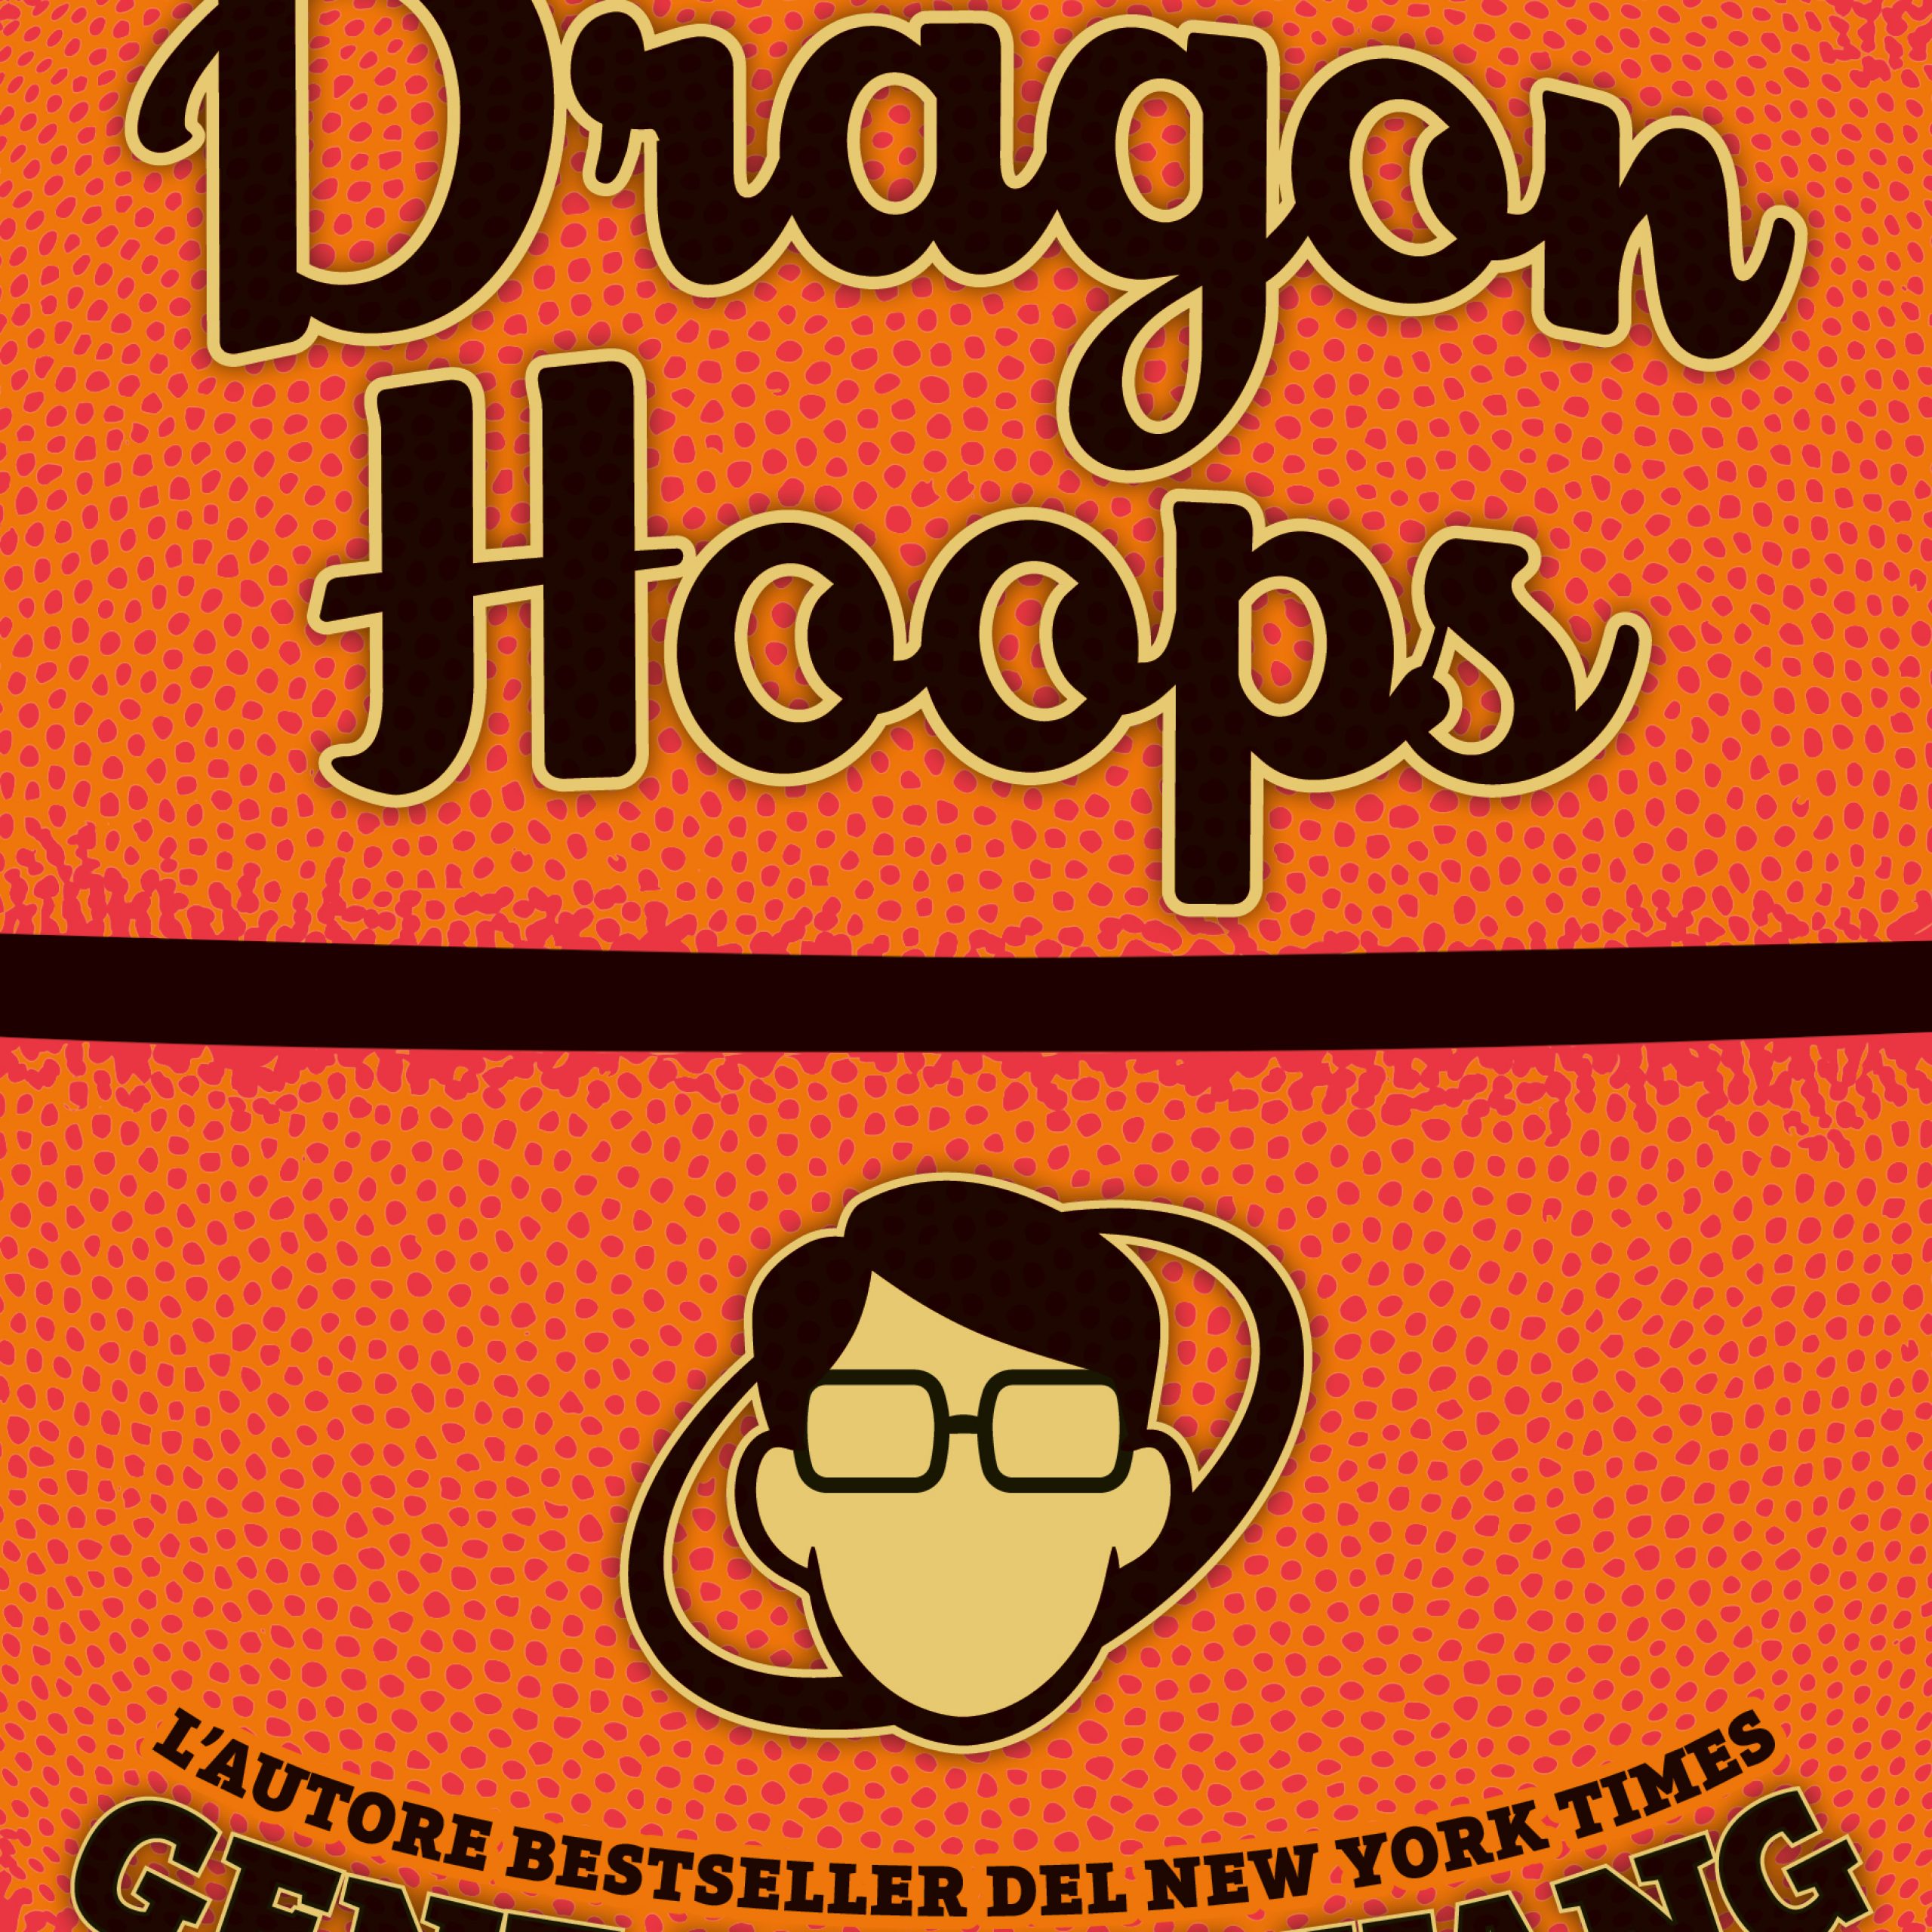 Dragon Hoops vince l’Eisner Awards